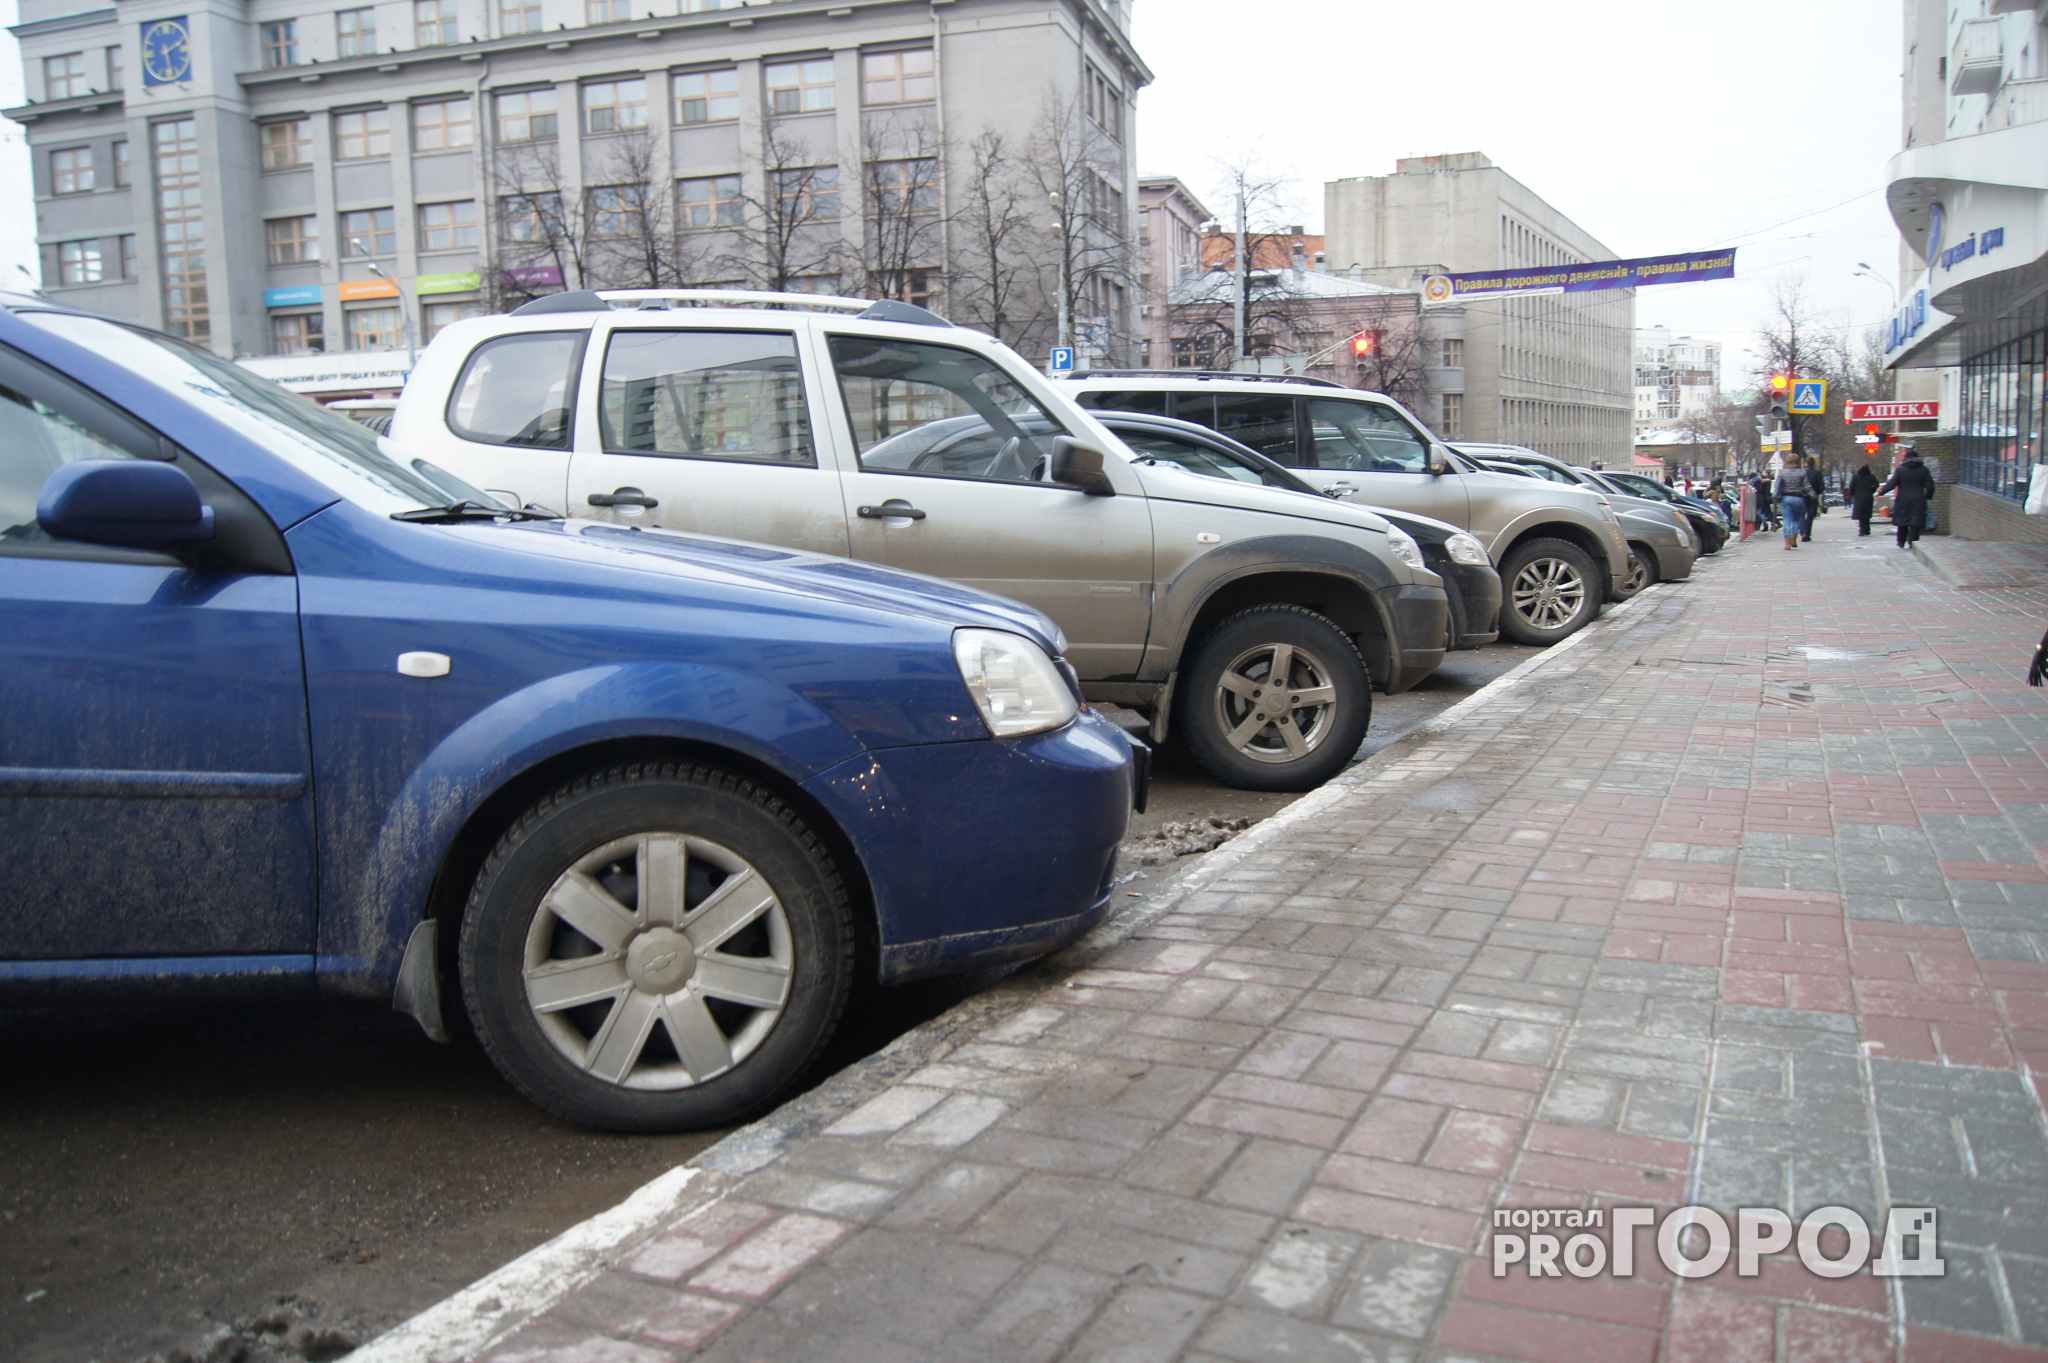 Стало известно, когда откроют две платные парковки в центре Нижнего Новгорода